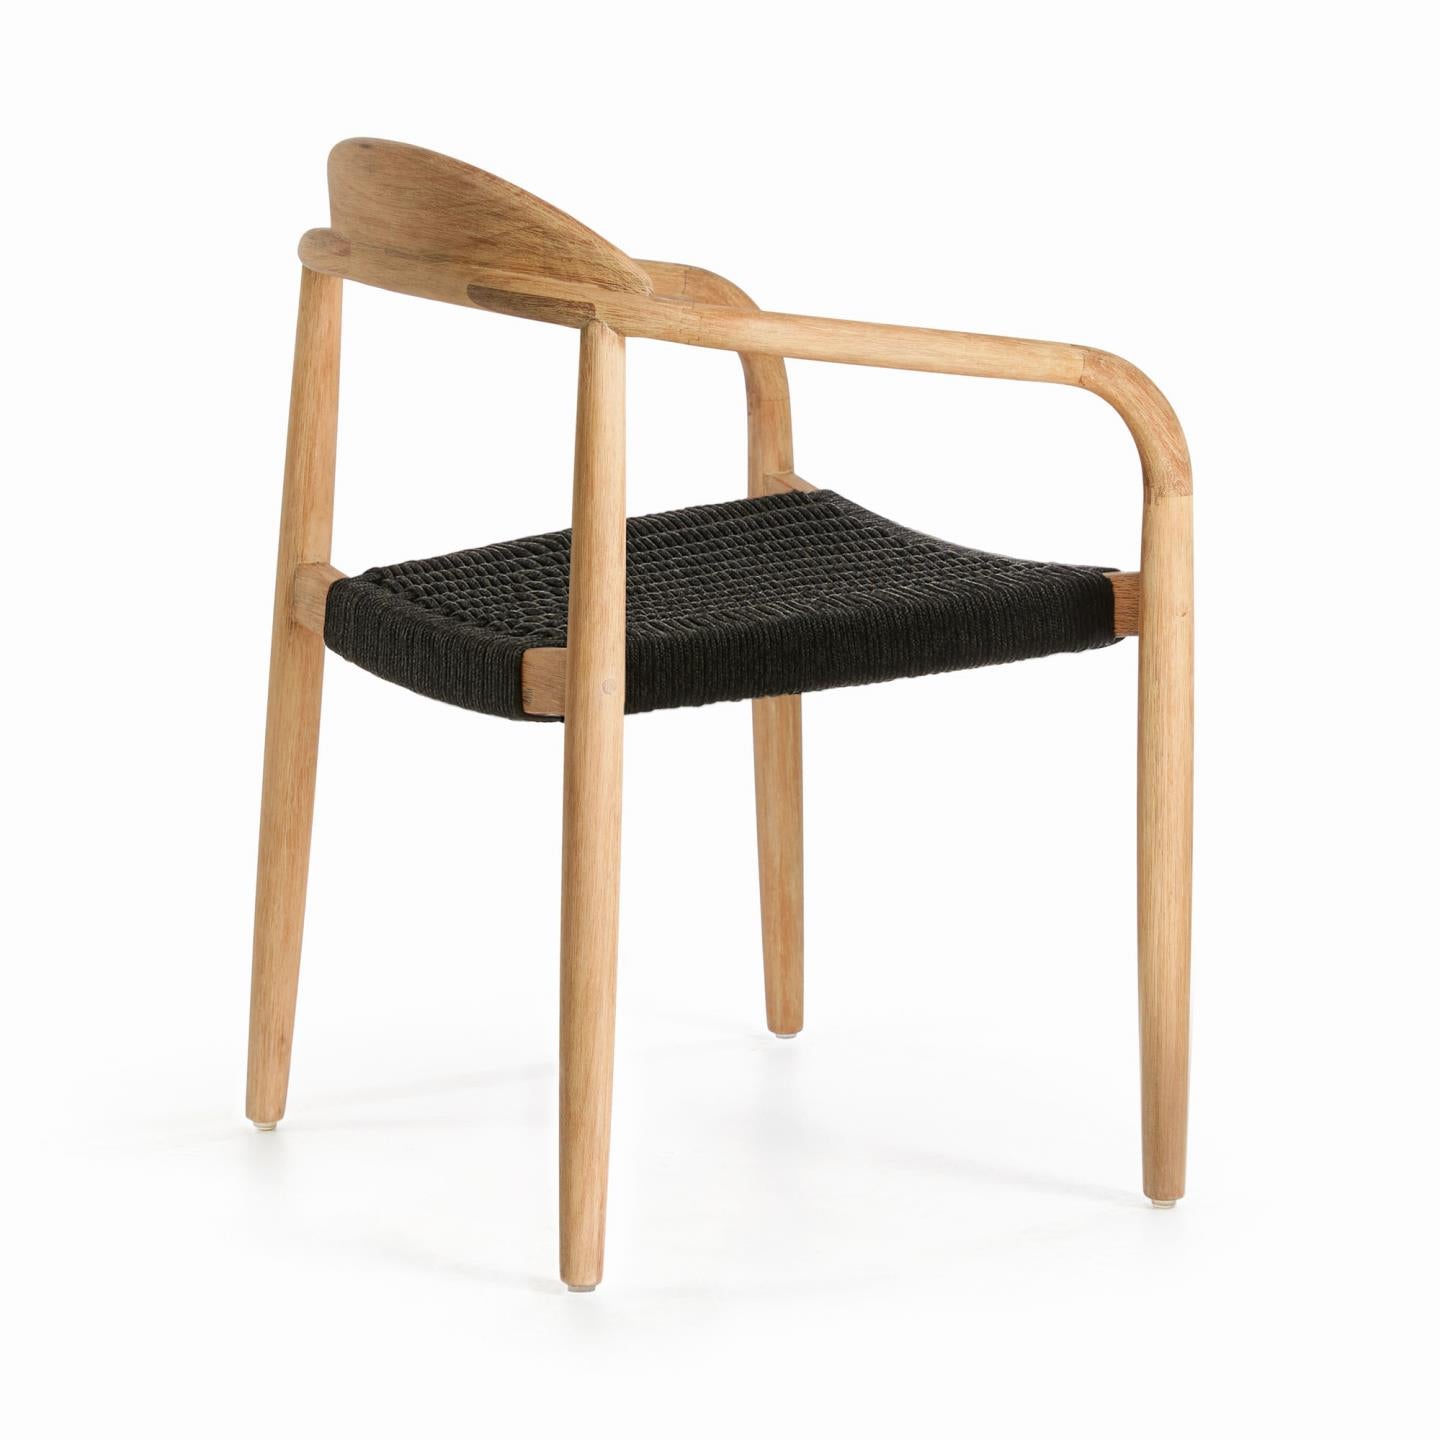 Nina egymásba rakható szék tömör akácfából, fekete kötélből készült ülőfelülettel